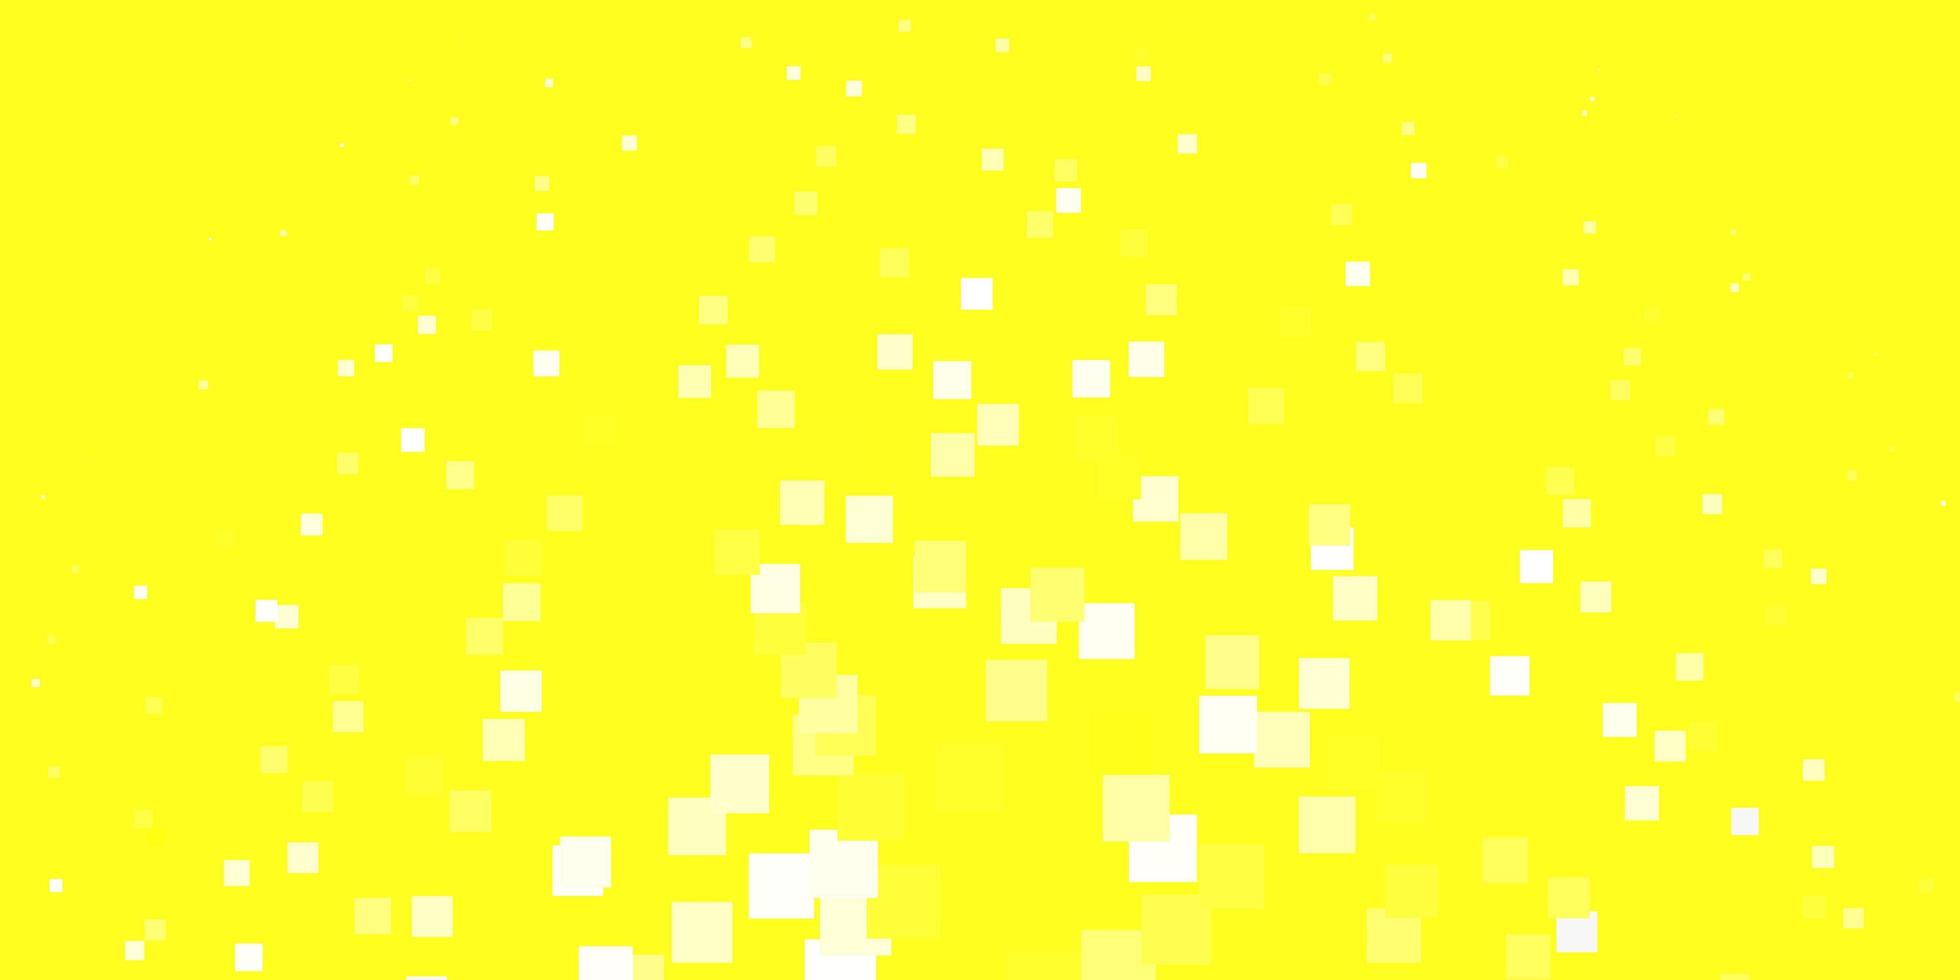 trama vettoriale giallo chiaro in stile rettangolare nuova illustrazione astratta con motivo a forme rettangolari per pagine di destinazione di siti Web